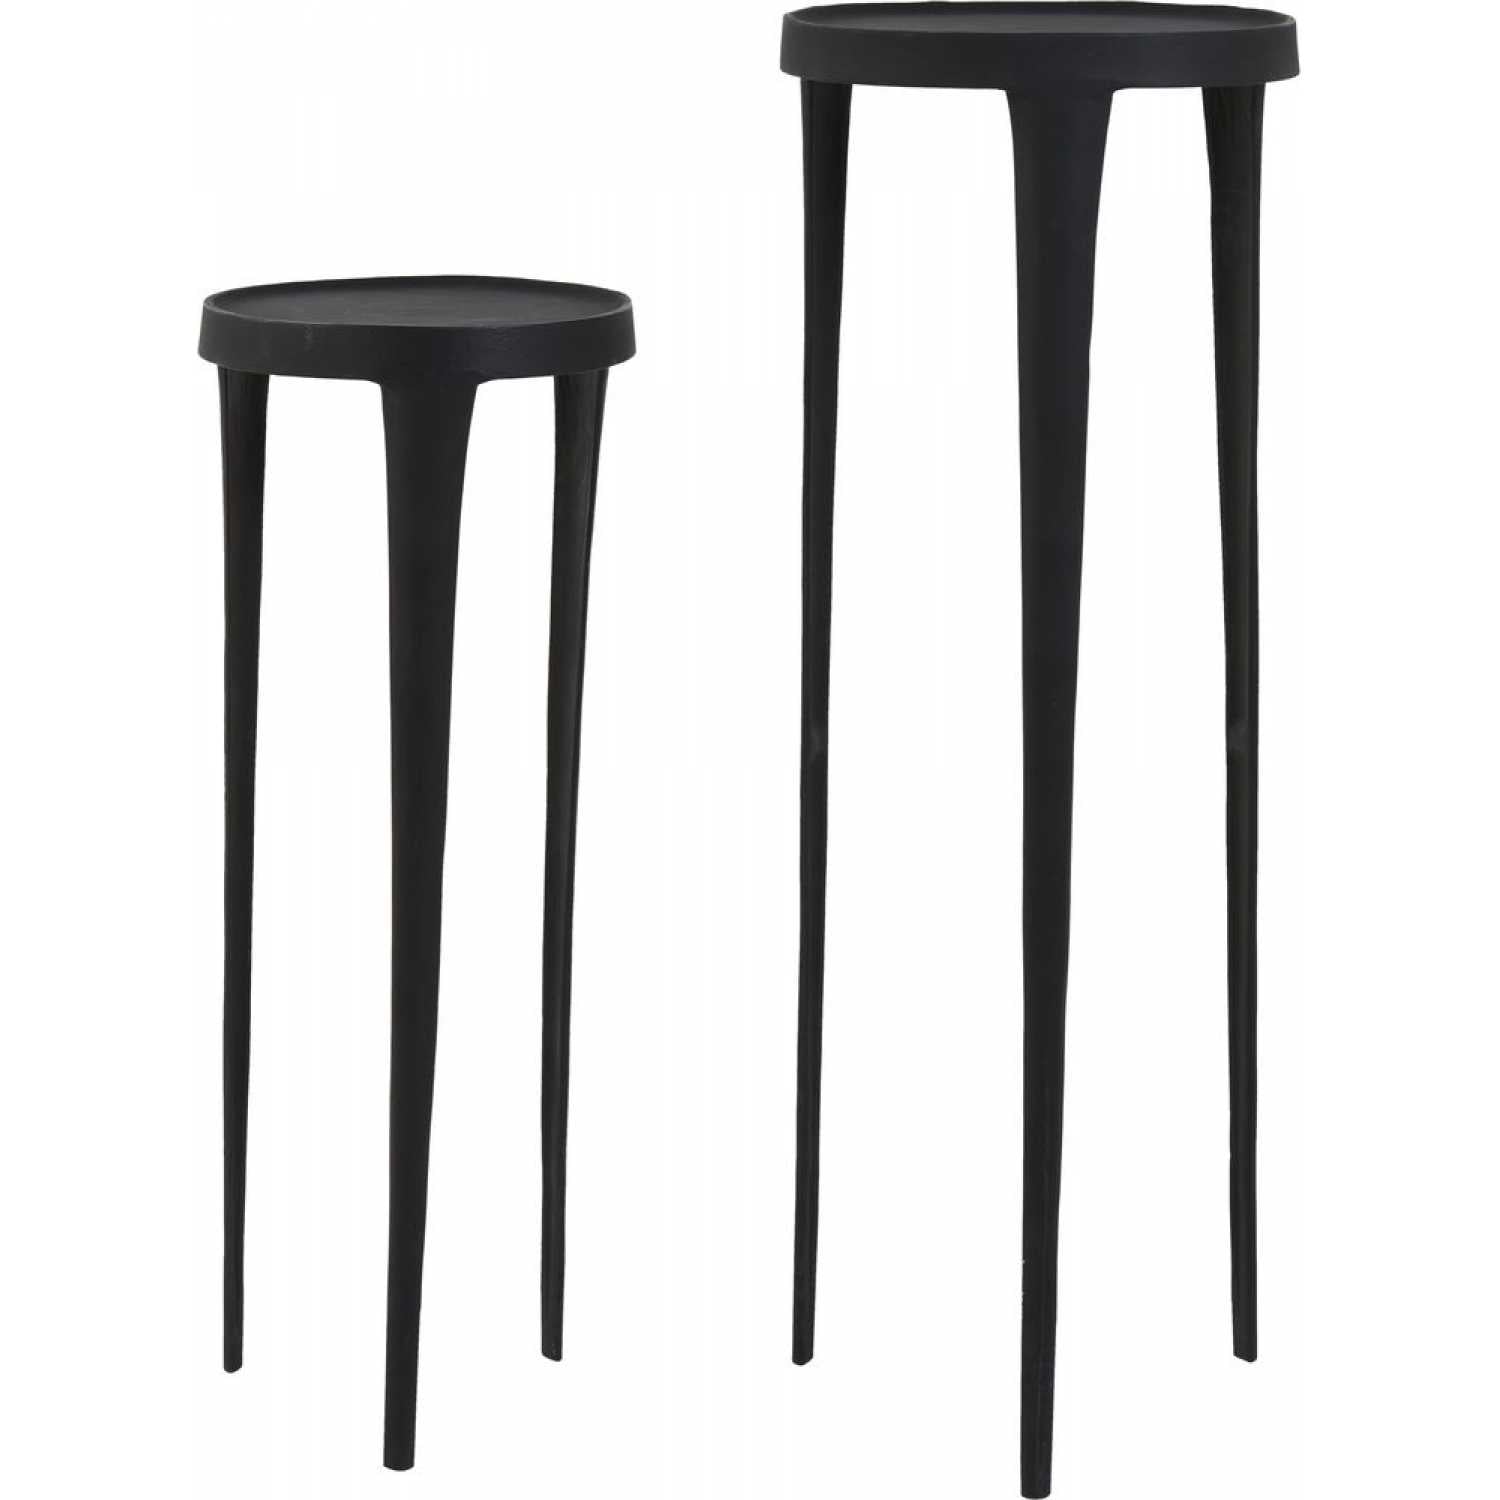 Set of 2 Black Pedestal Side Tables